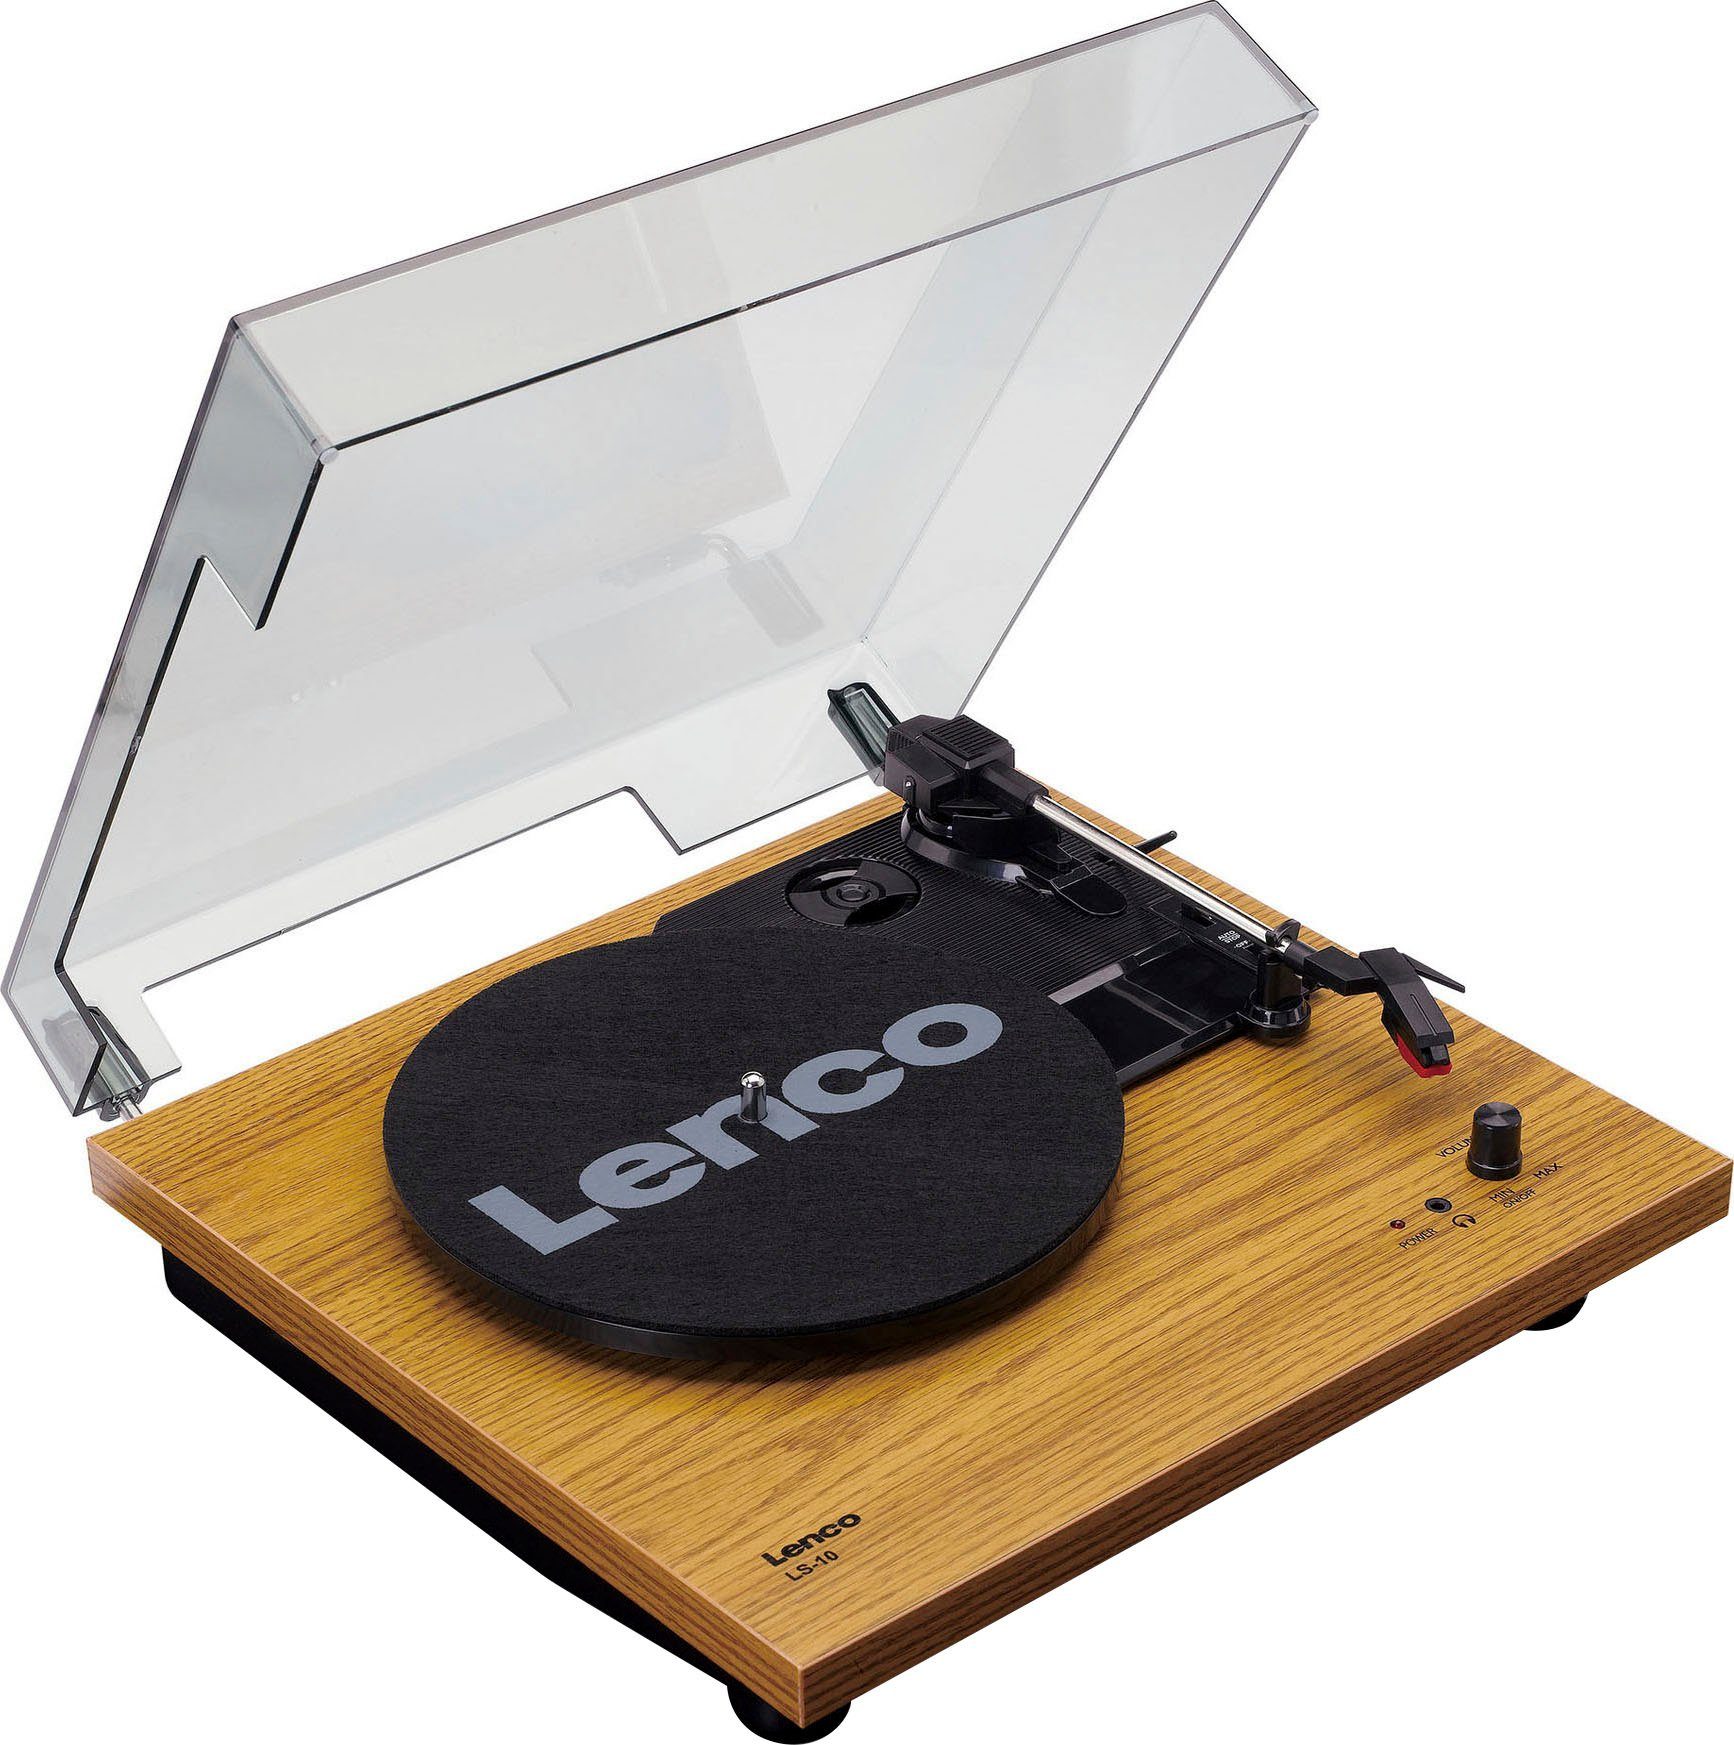 (Riemenantrieb) Lautsprechern Plattenspieler mit Lenco (Weiß/Holz) LS-10WD Plattenspieler